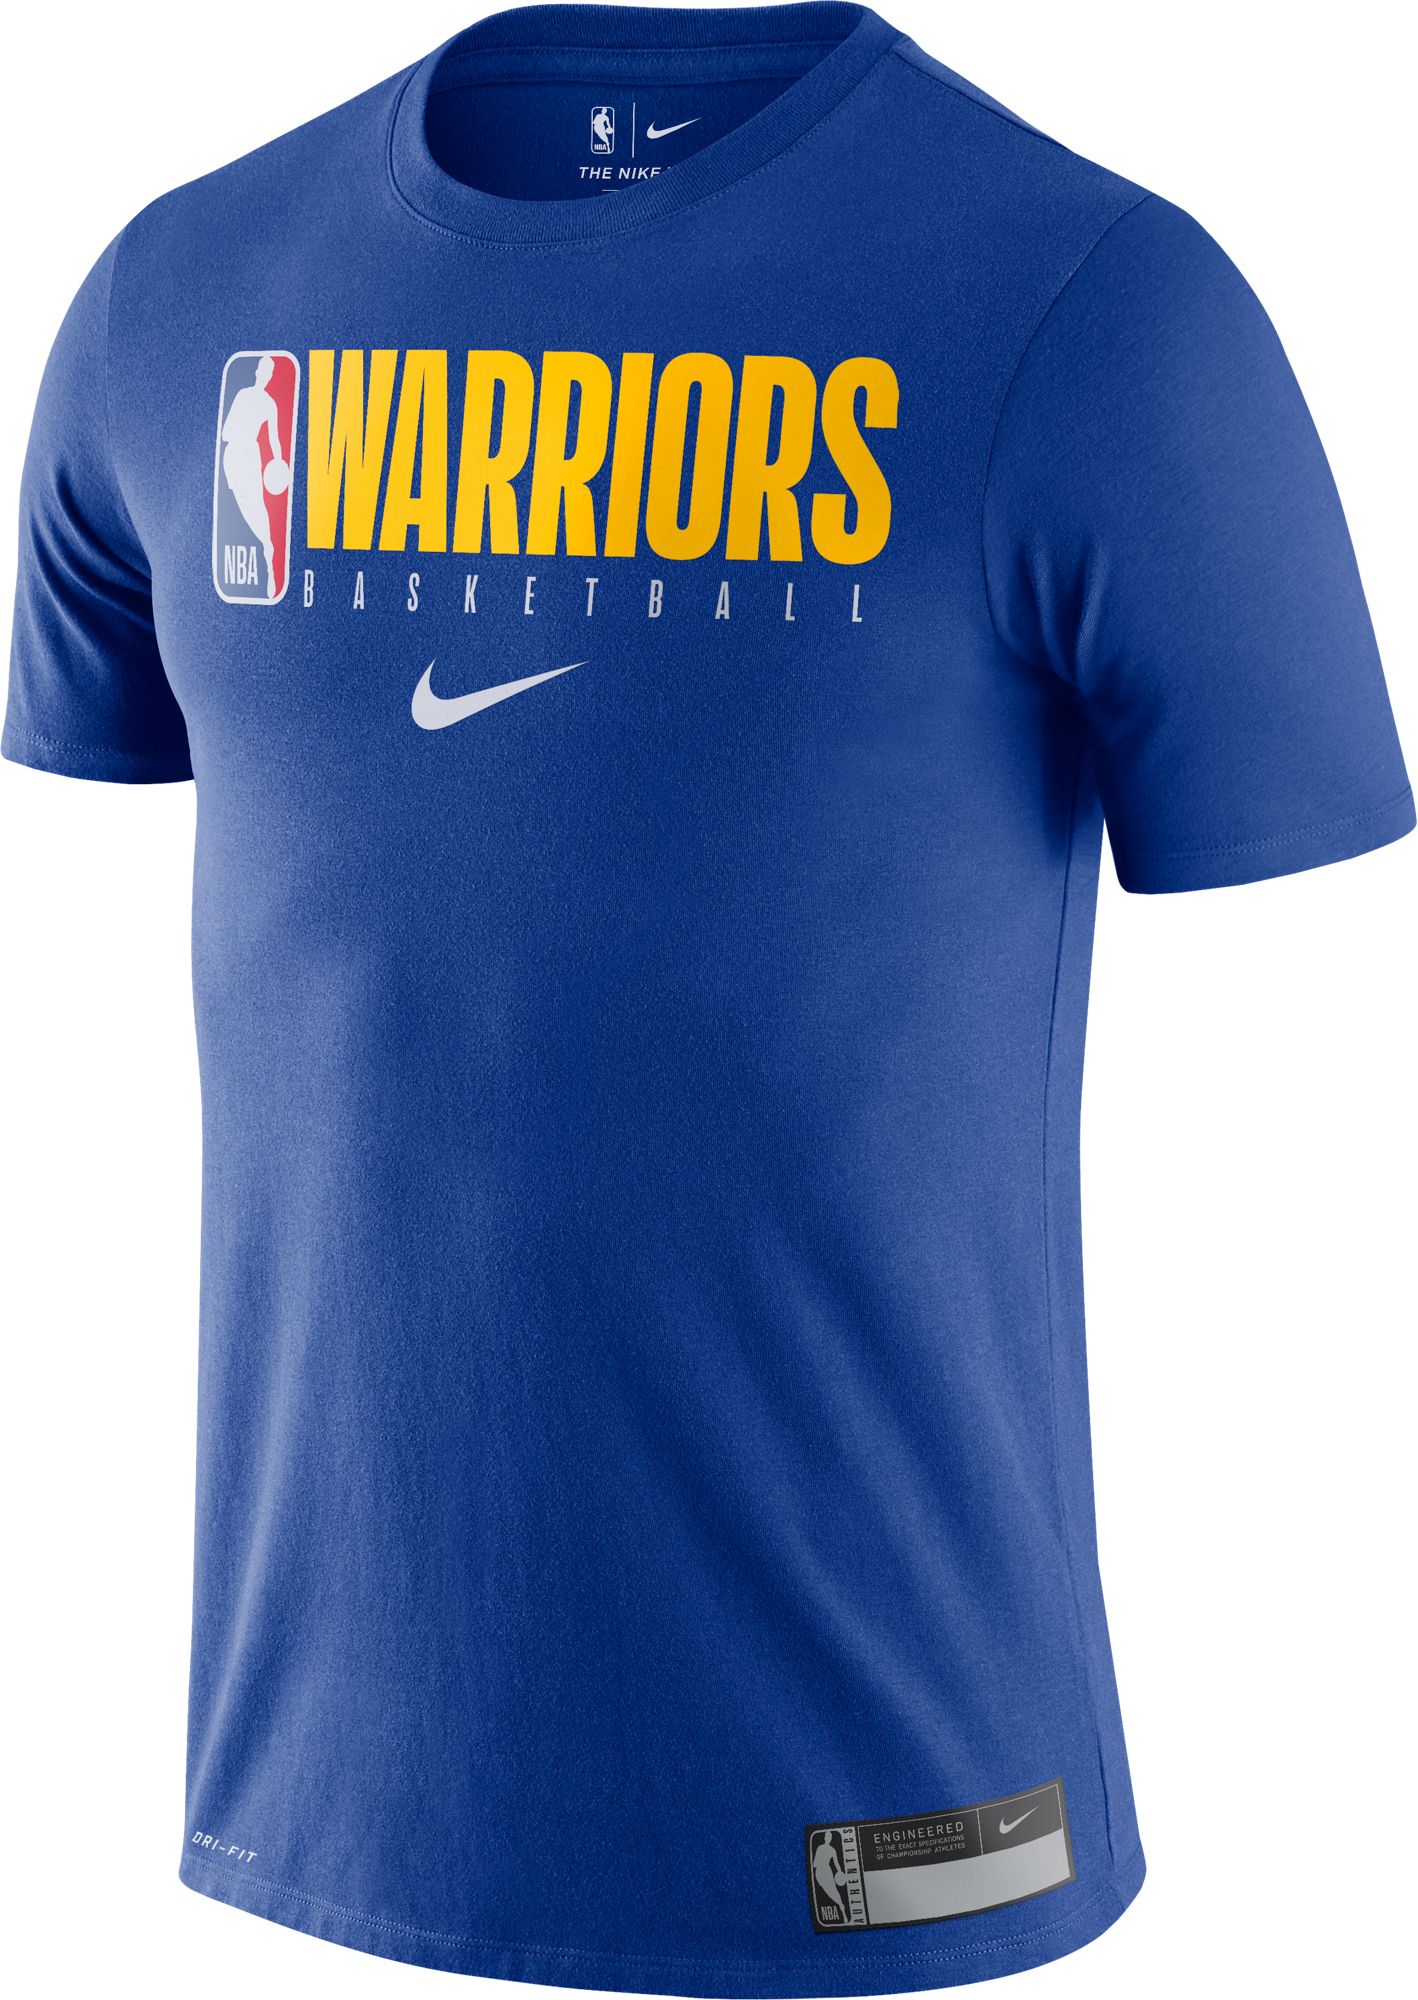 warriors practice shirt